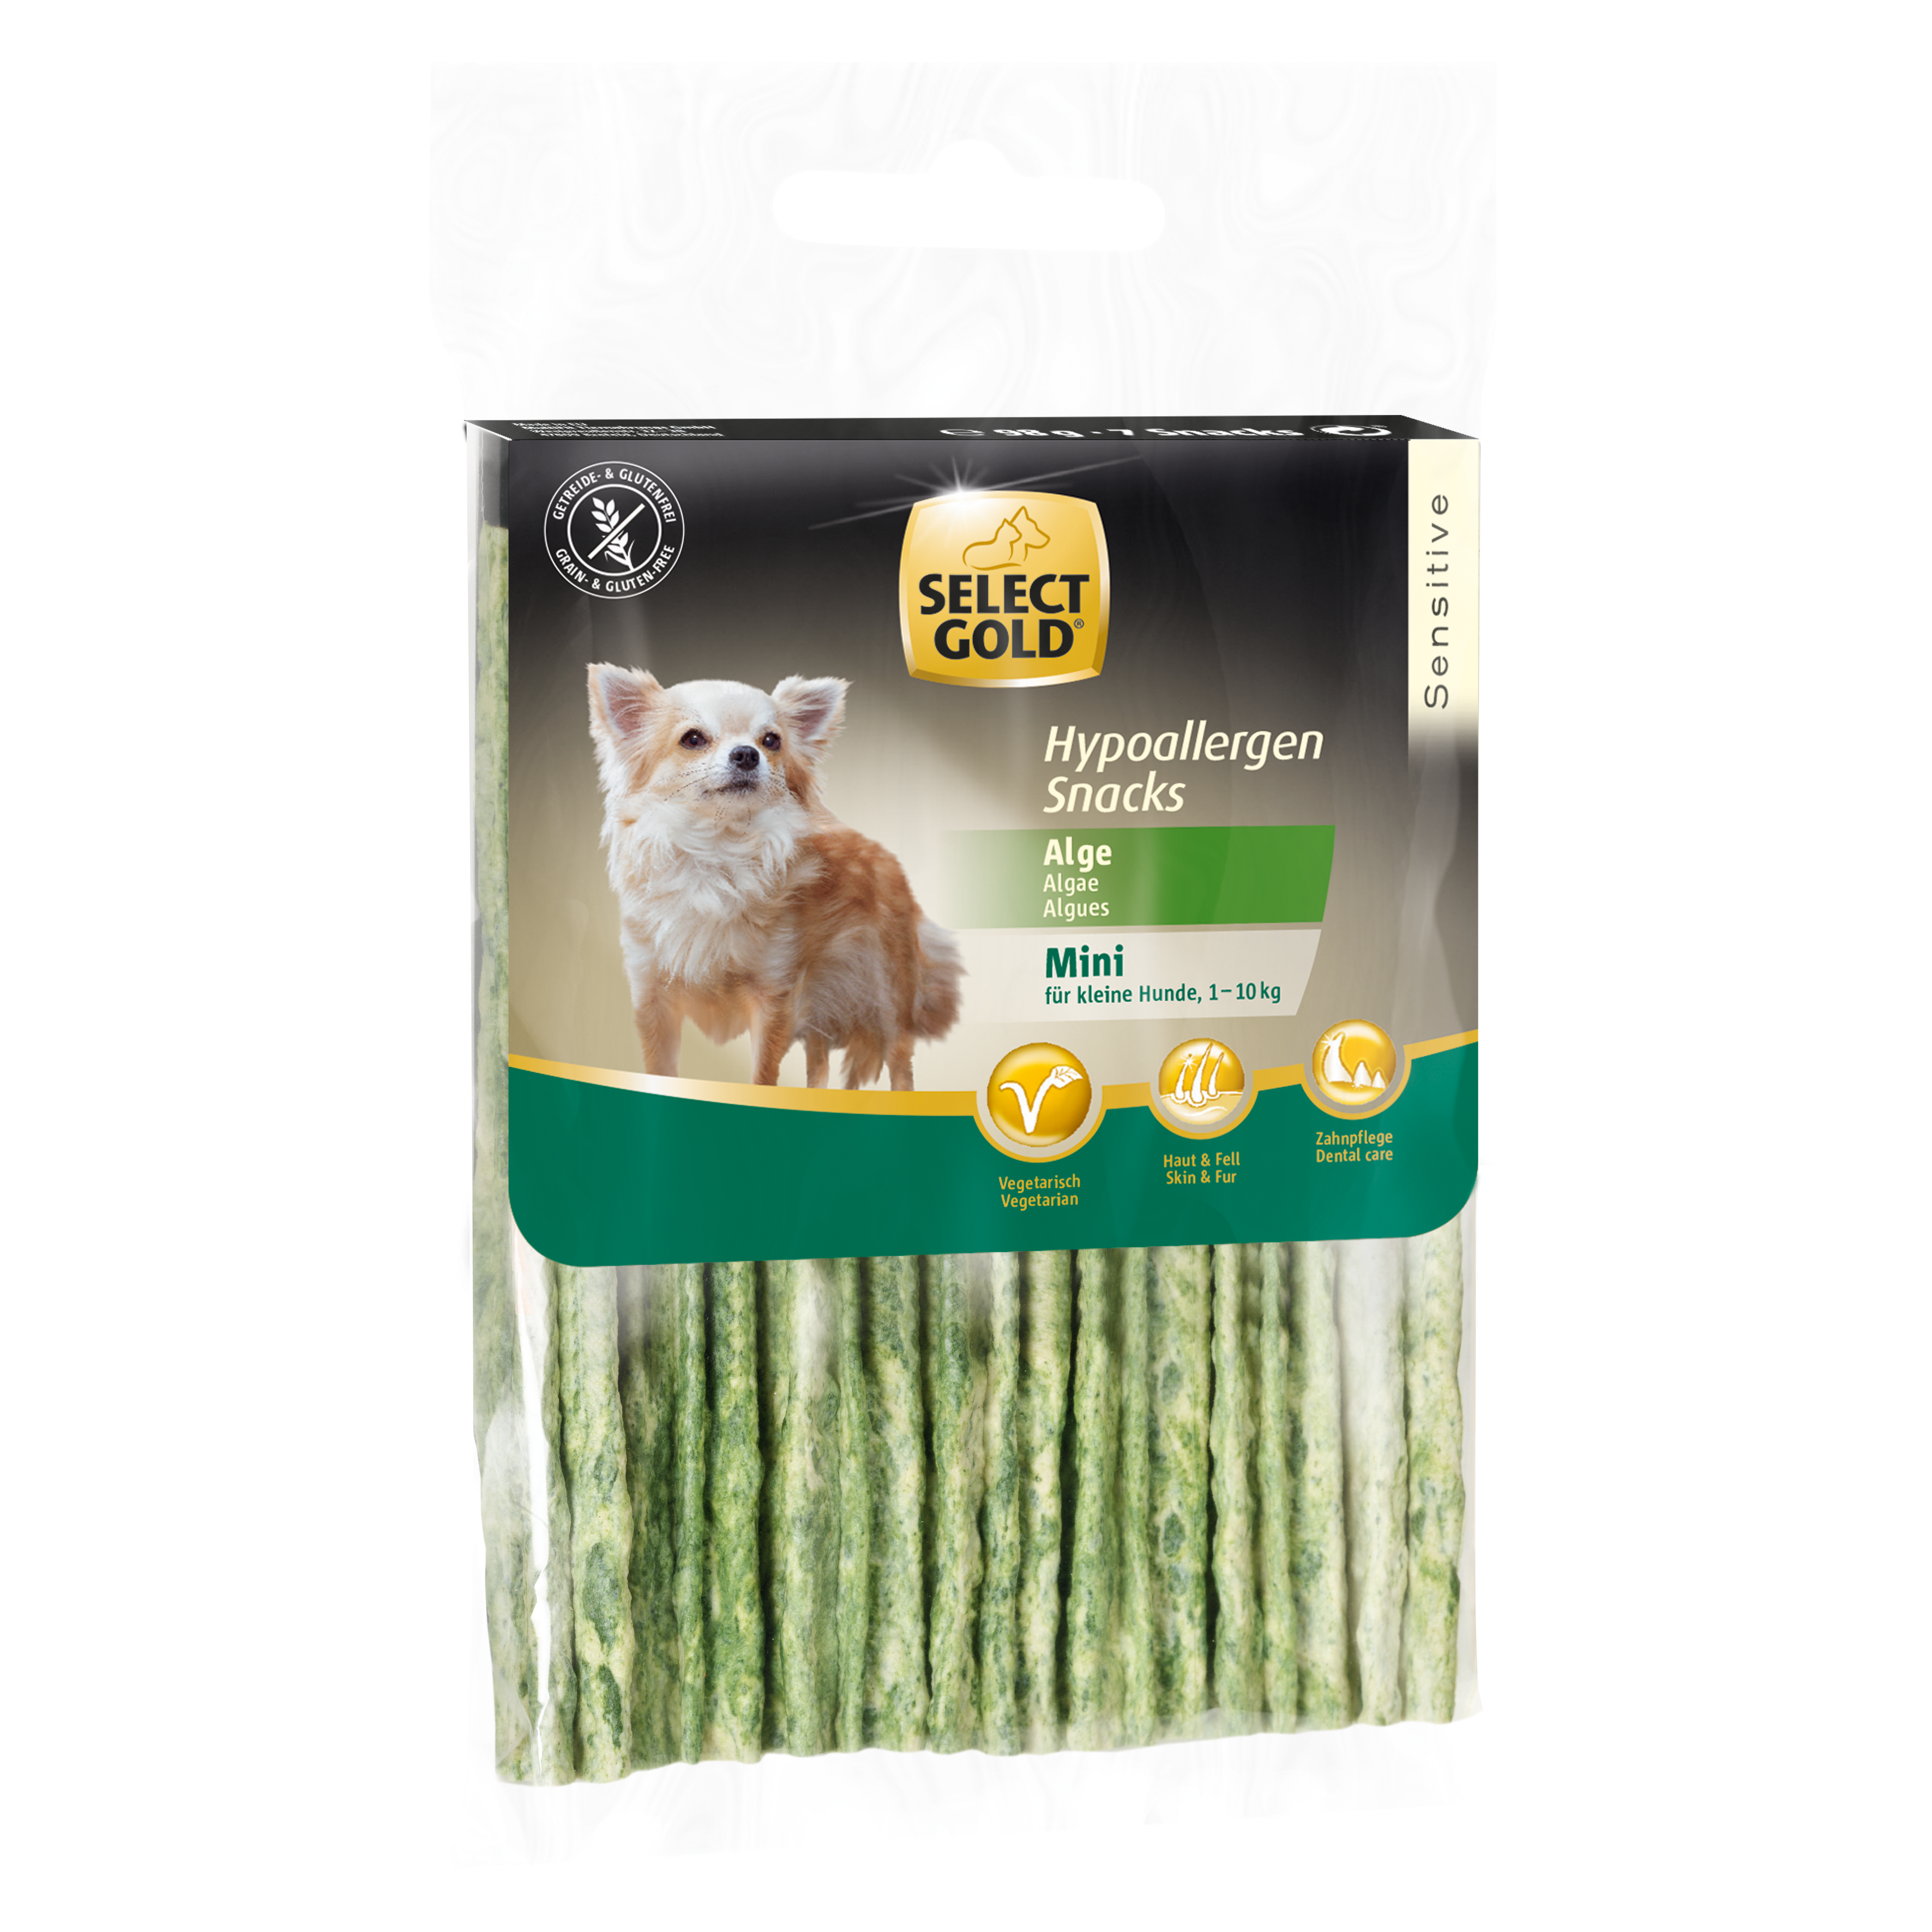 SELECT GOLD Sensitive Hypoallergen Snack mit Alge Für kleine Hunde 2x99g